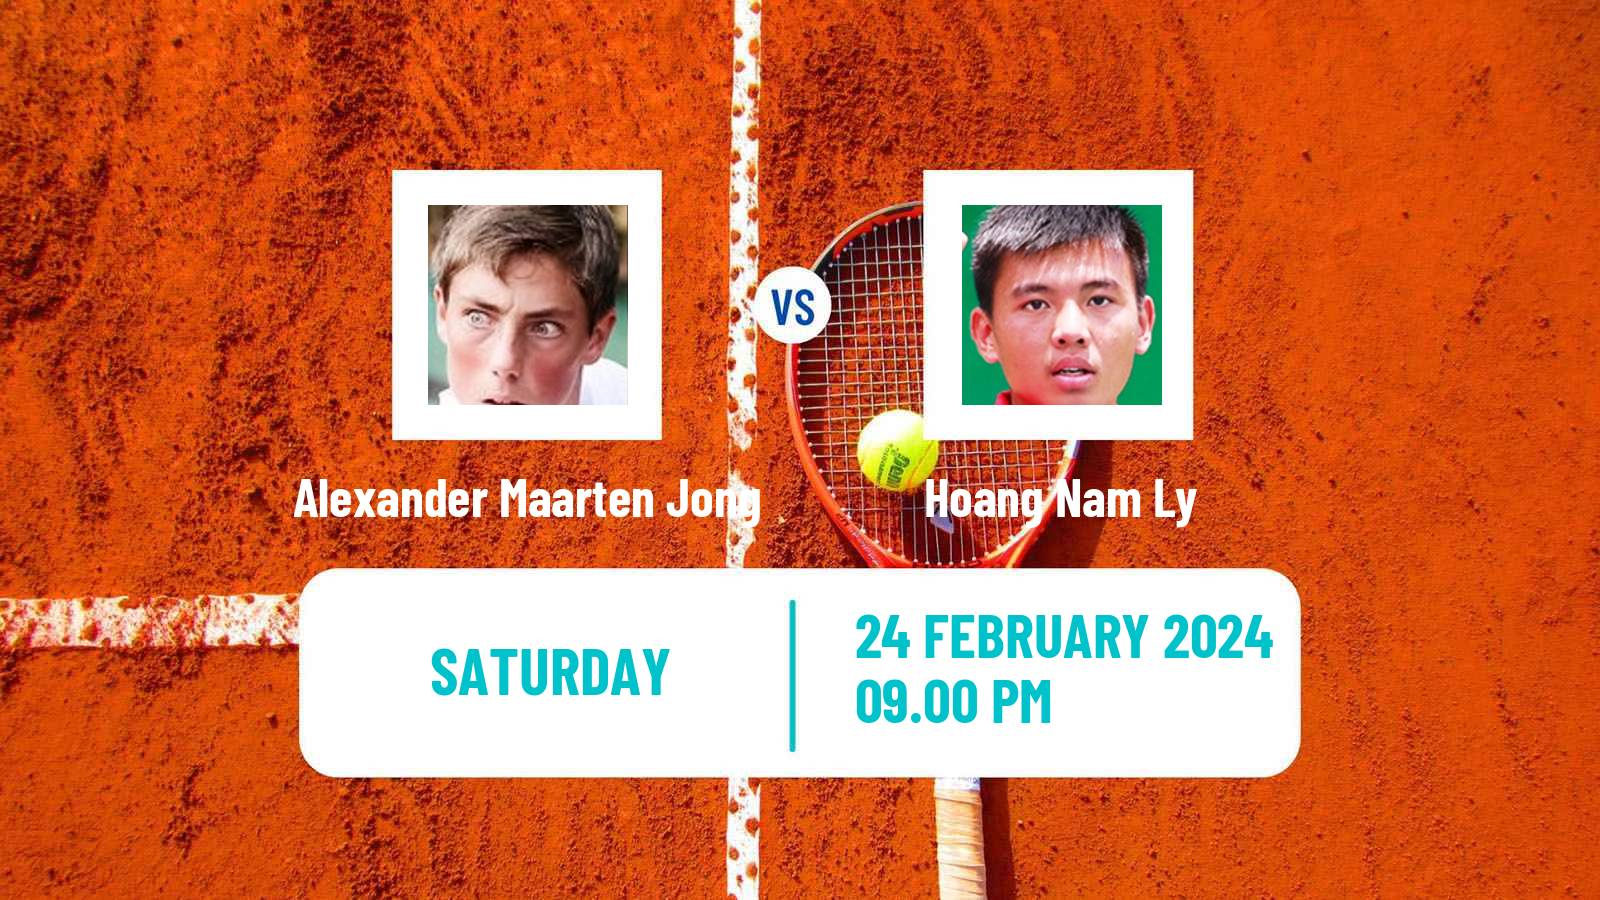 Tennis ITF M15 Nakhon Si Thammarat 2 Men Alexander Maarten Jong - Hoang Nam Ly